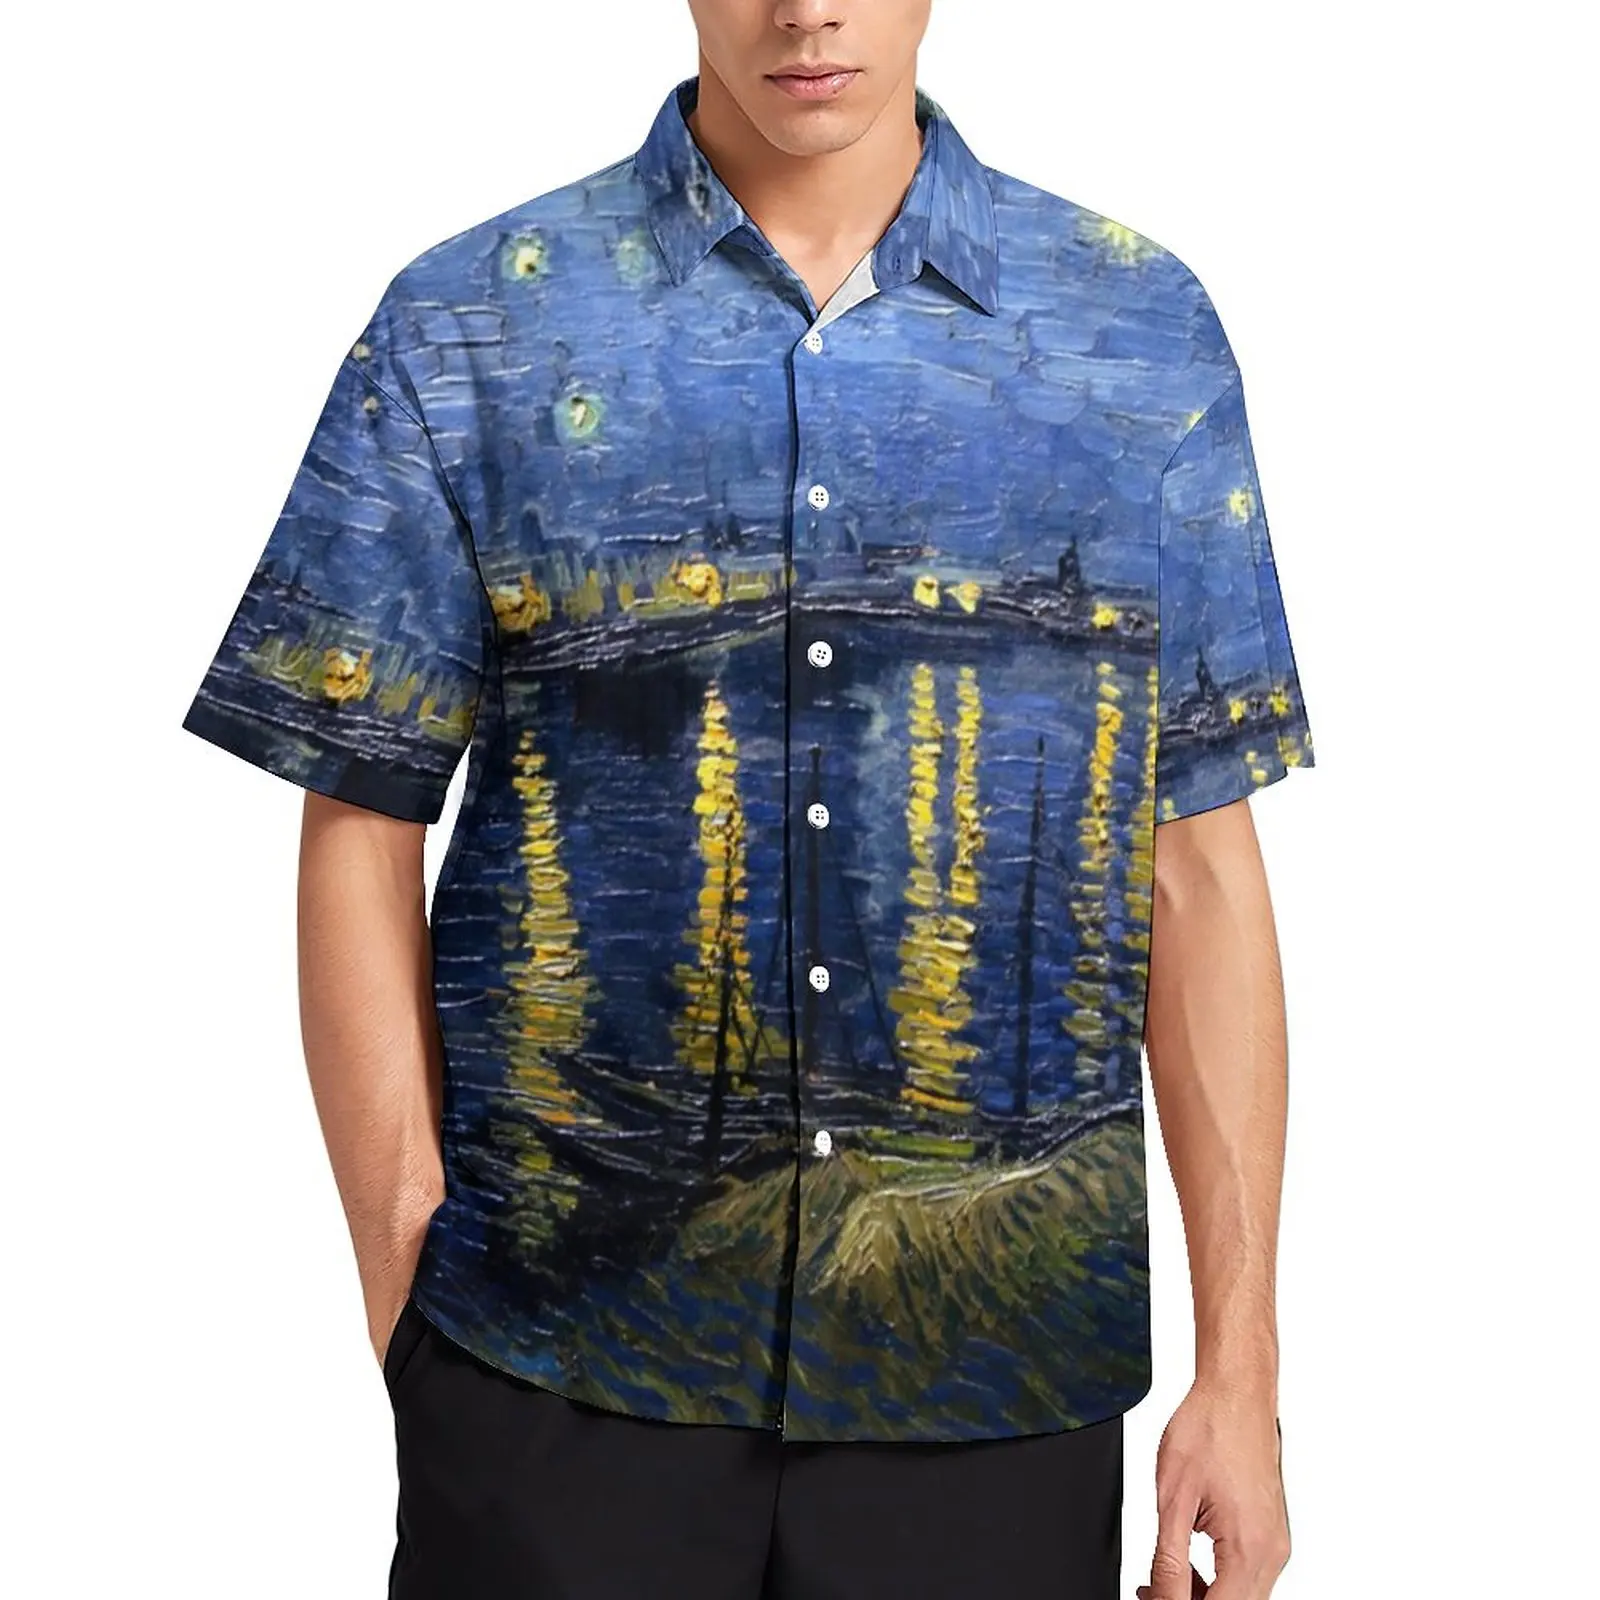 

Повседневная рубашка с принтом "Звездная ночь над Роном", Пляжная Свободная рубашка Ван Гога, Гавайские трендовые блузки, Топ большого разме...